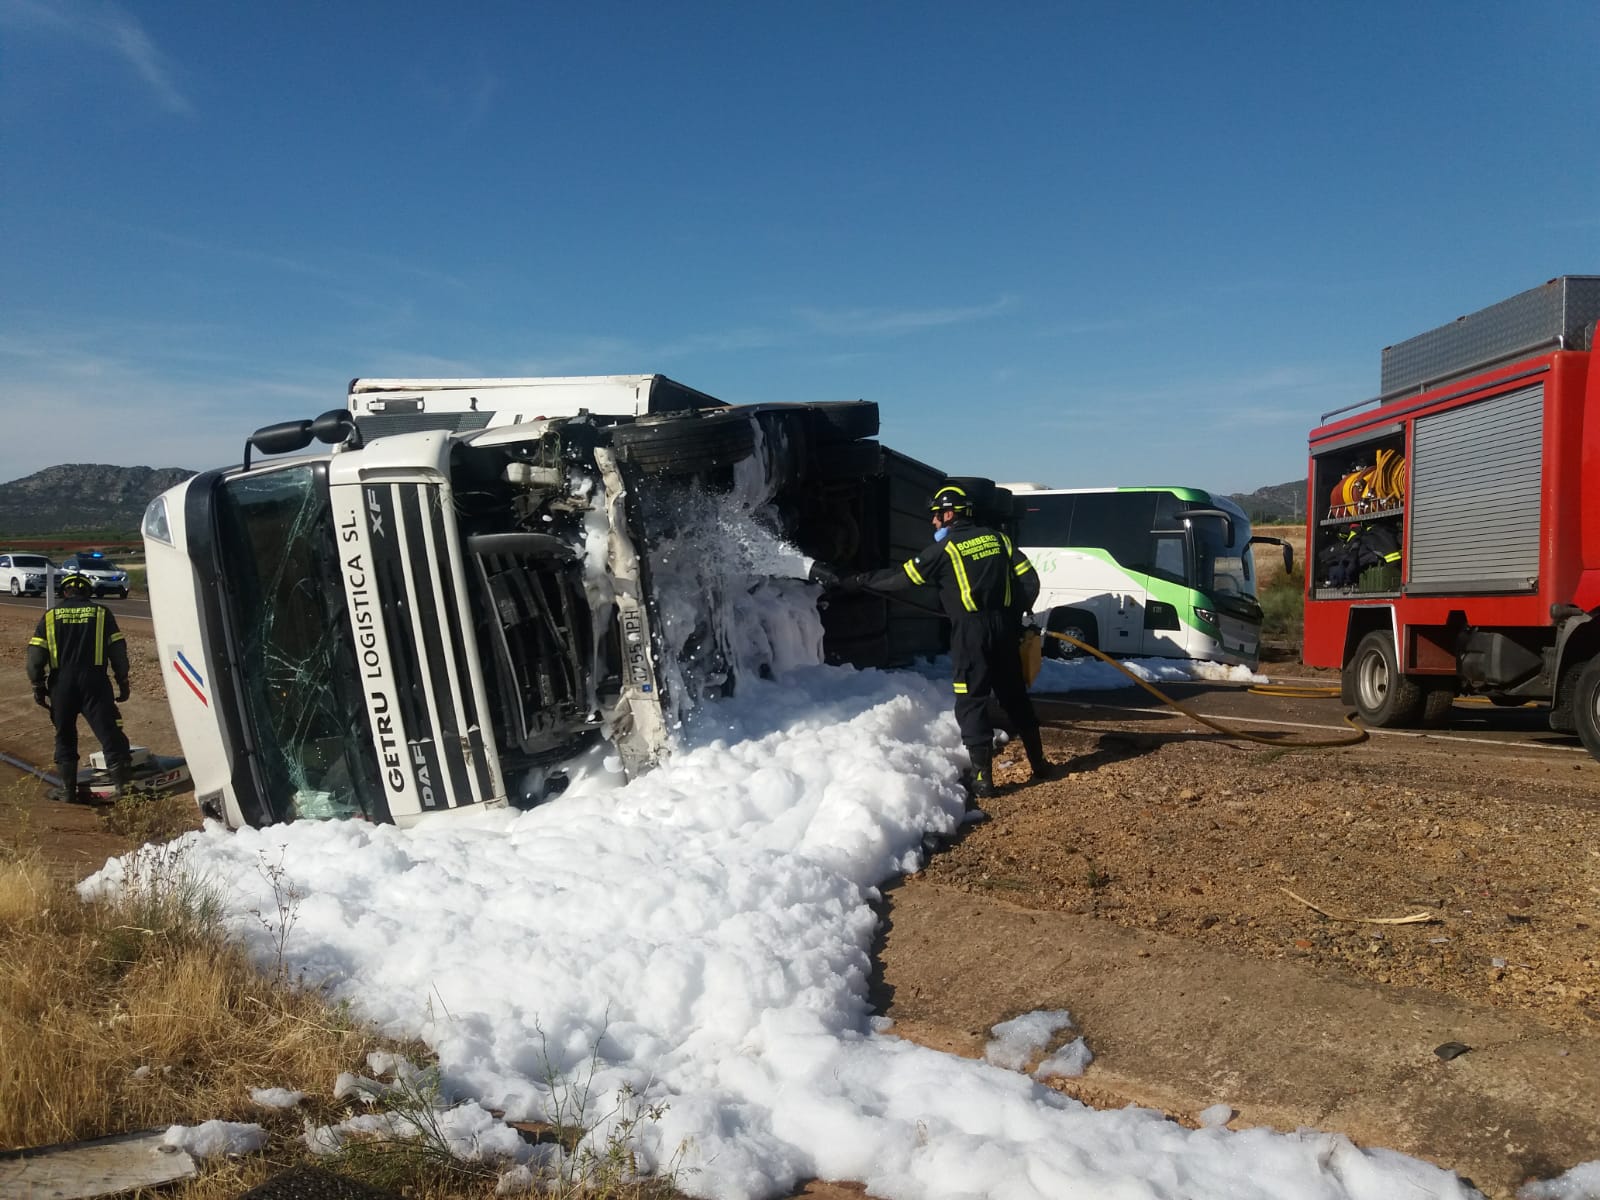 El accidente ha ocurrido este sábado por la tarde a la altura de Torremejía, al saltarse la mediana el camión y colisionar con el vehículo. Los dos carriles en sentido Sevilla han sido cortados al tráfico